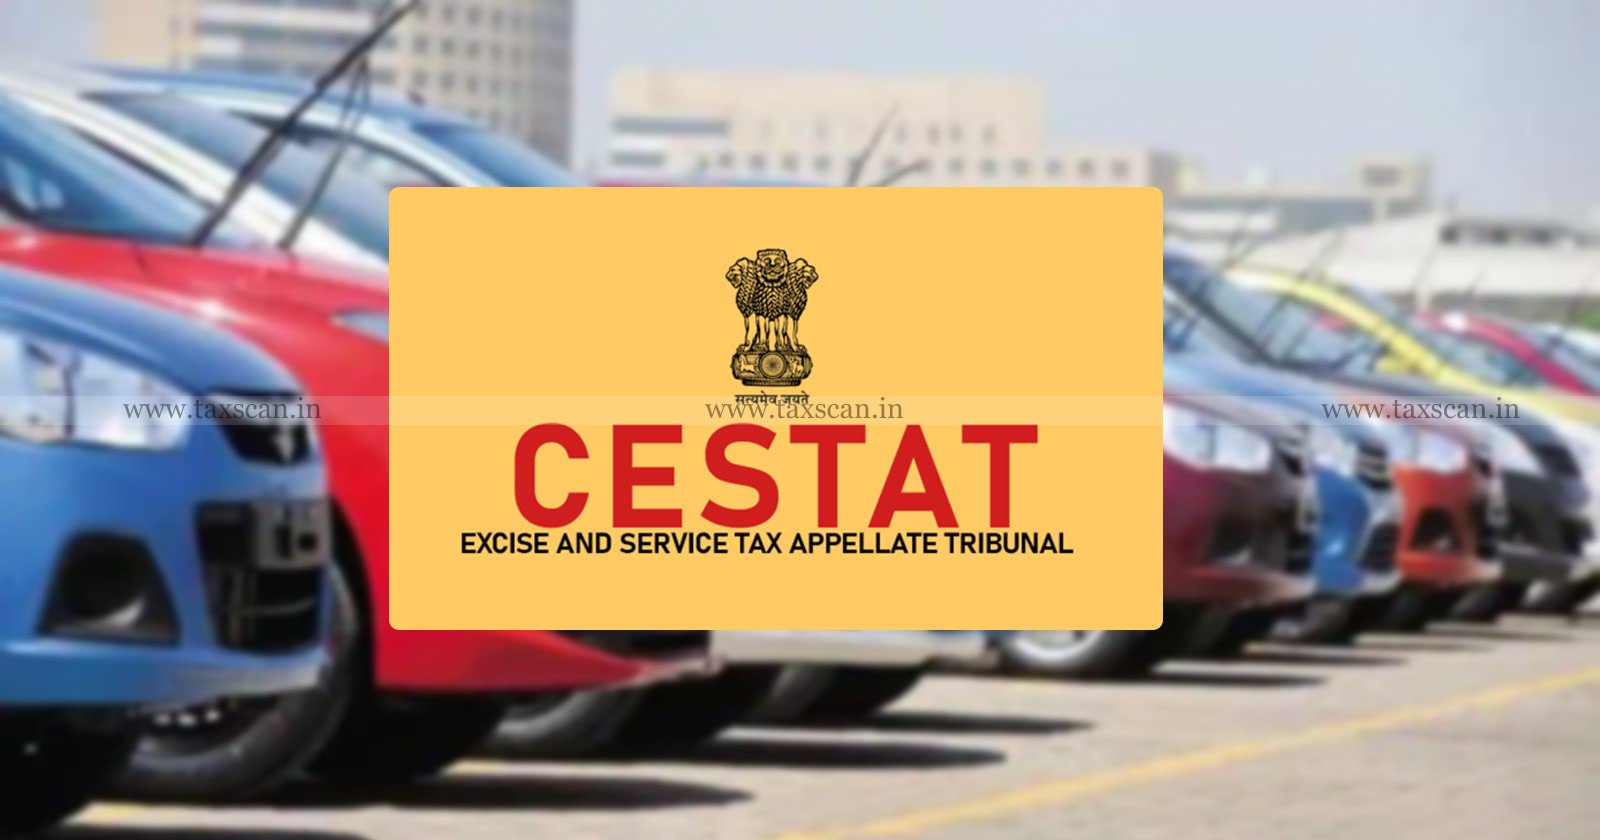 Vehicle - Indian roads - CESTAT - VRDE - taxscan